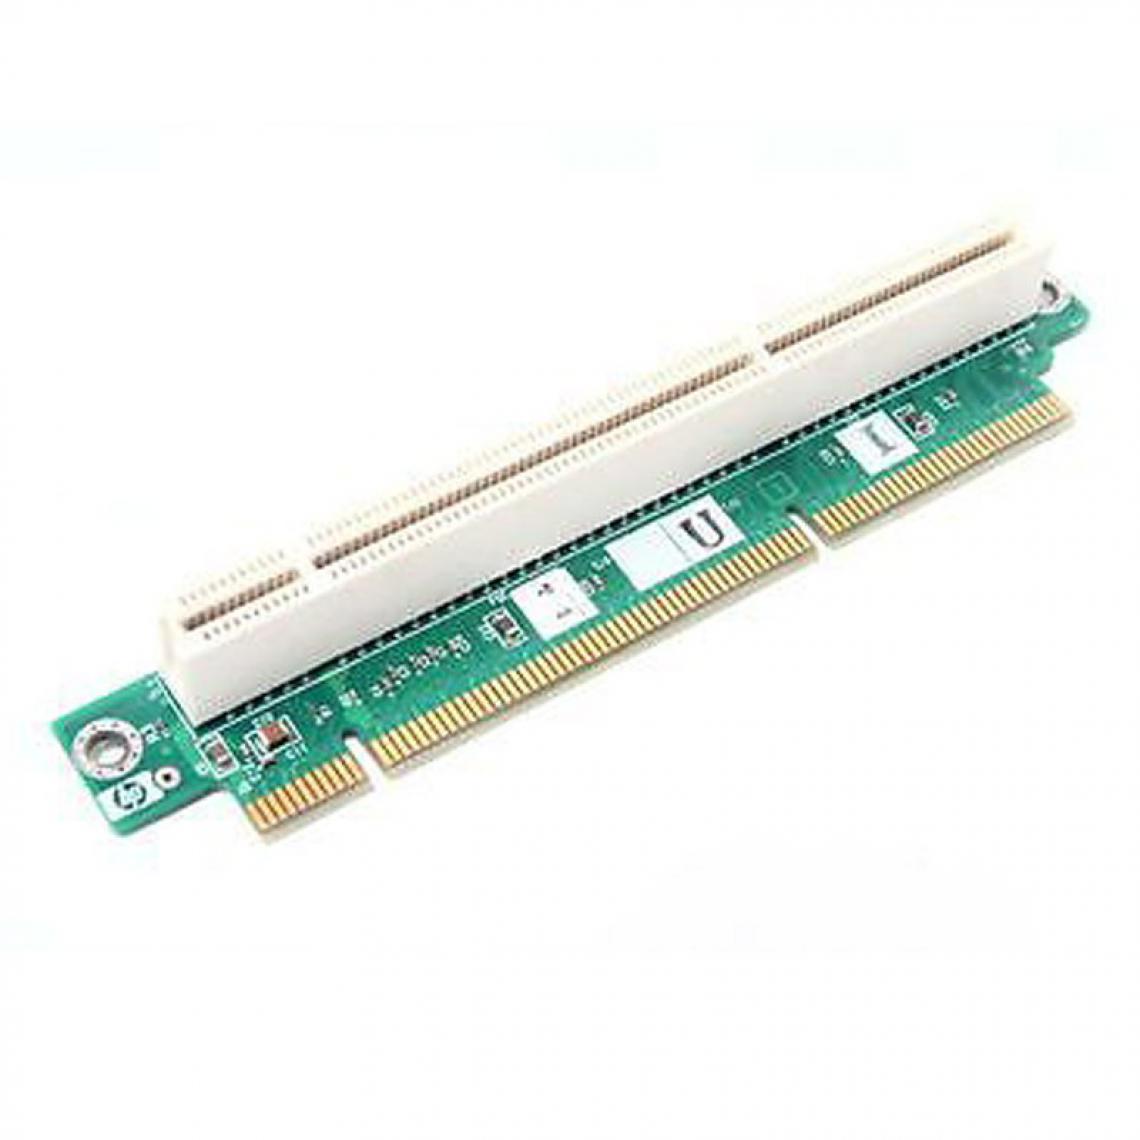 Hp - Carte PCI-X Riser Card HP 0Q02B5 1x PCIe 305442-001 ER41M64687 ProLiant DL360 G3 - Carte Contrôleur USB